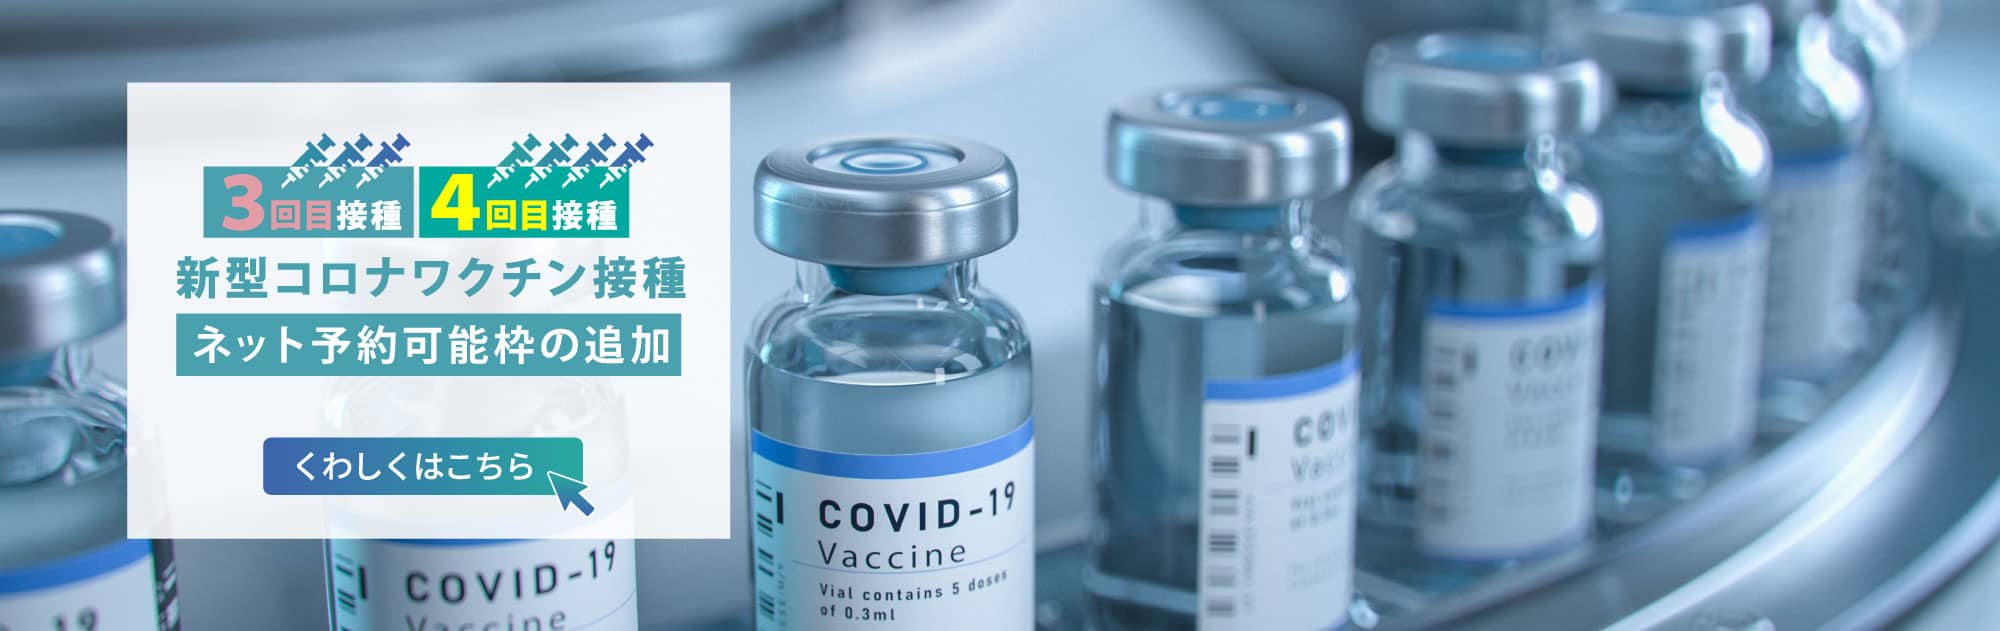 新型コロナワクチン接種 3回目・4回目ワクチンの予約枠追加